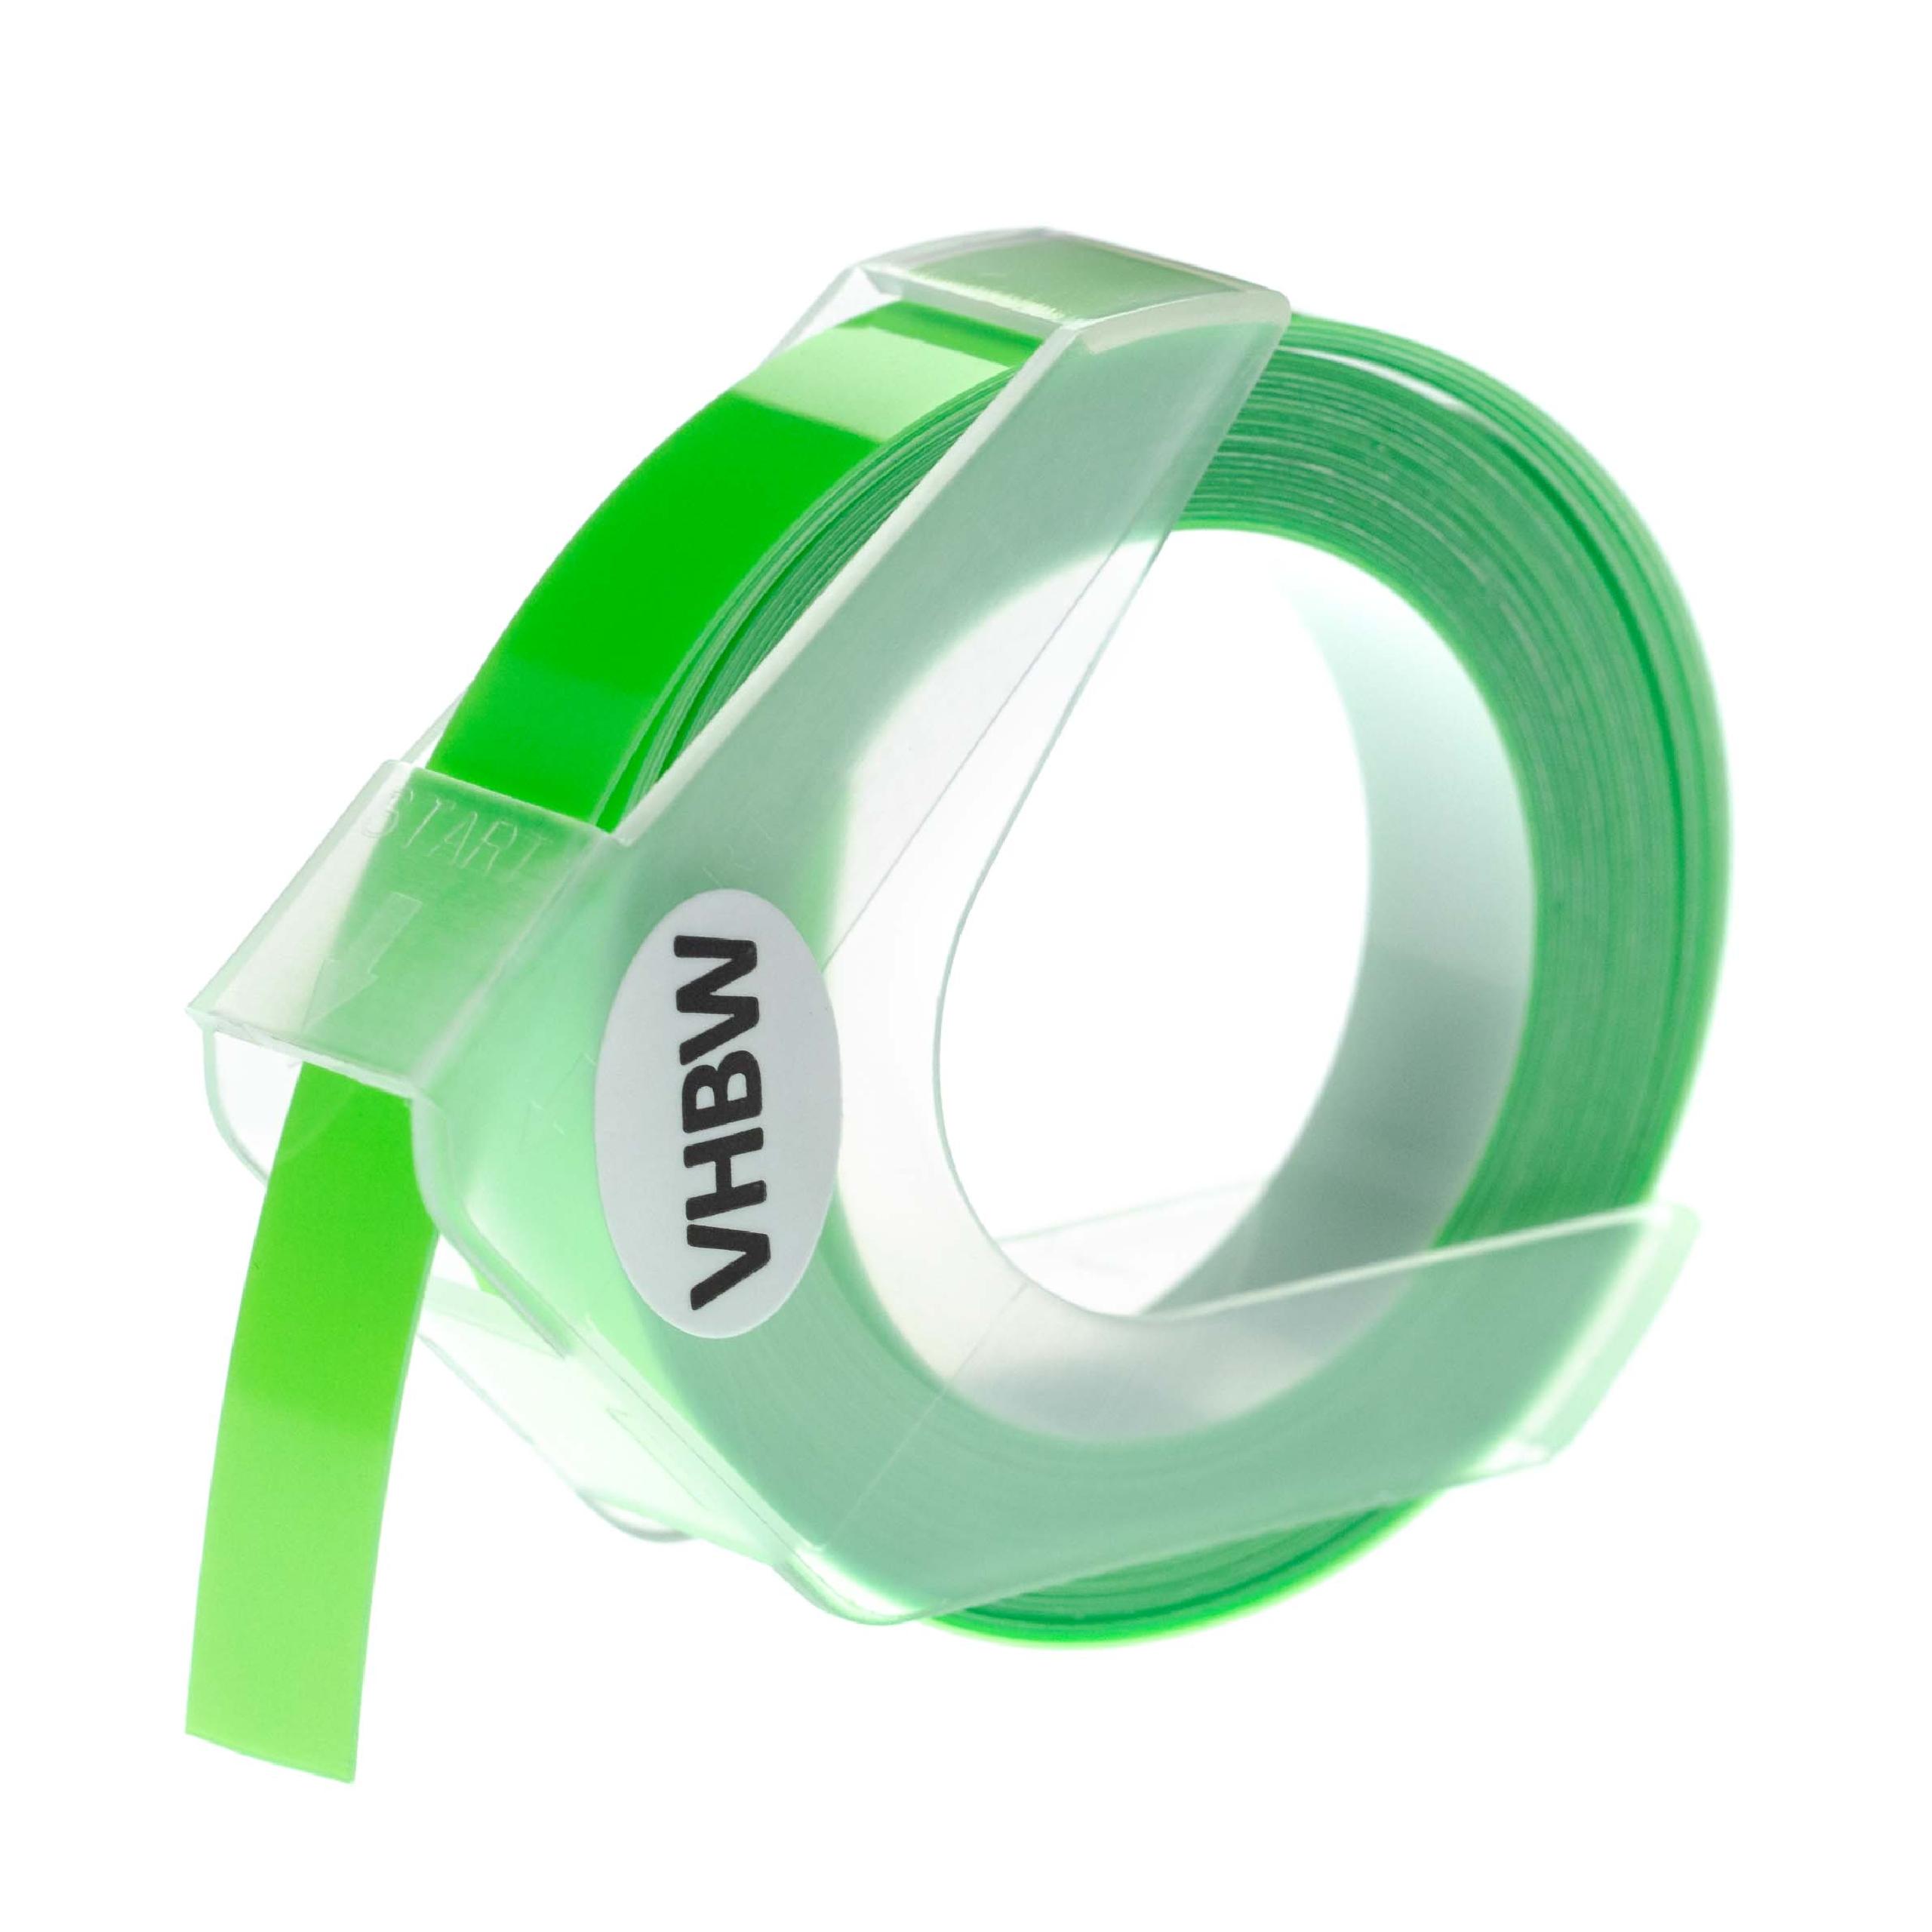 Casete cinta relieve 3D Casete cinta escritura reemplaza Dymo S0898290, 0898290 Blanco su Verde neon